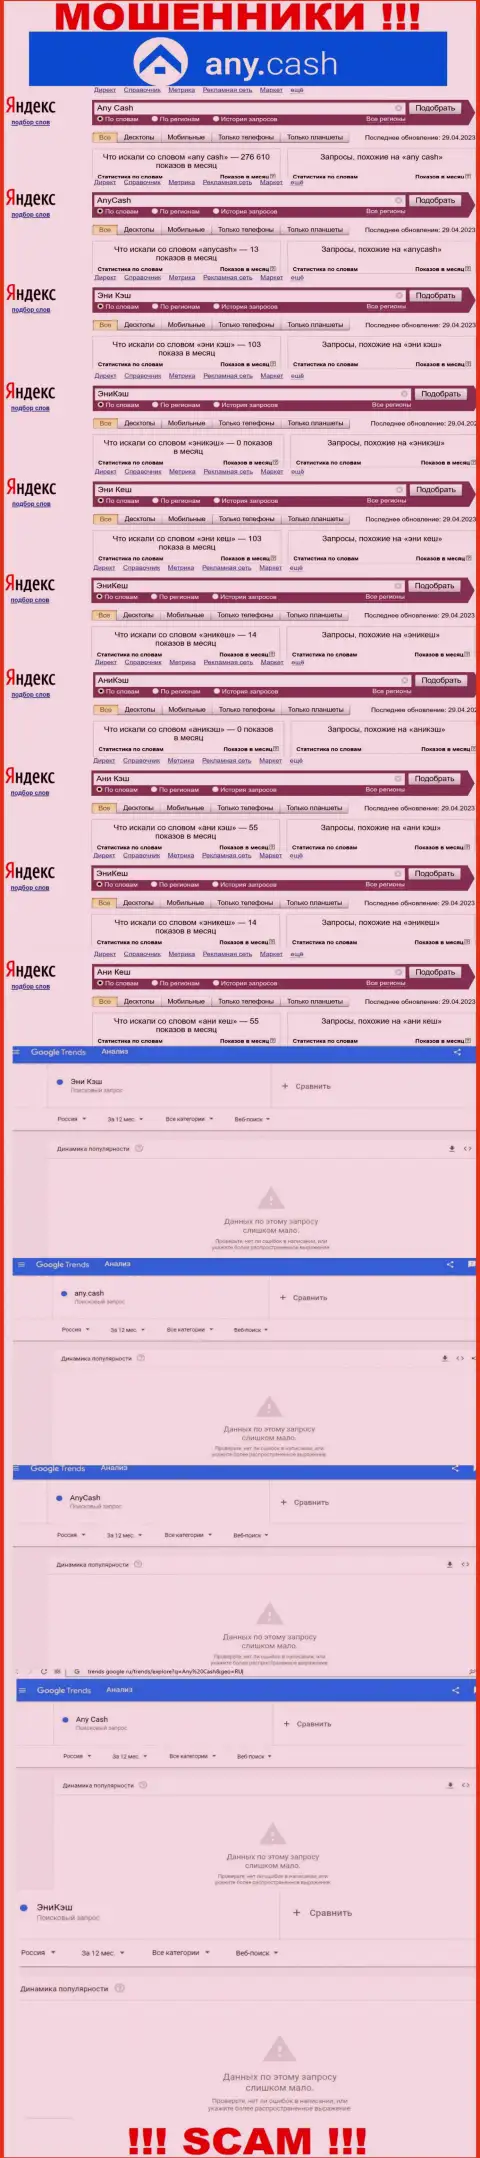 Скриншот итогов online запросов по противозаконно действующей конторе Ани Кеш